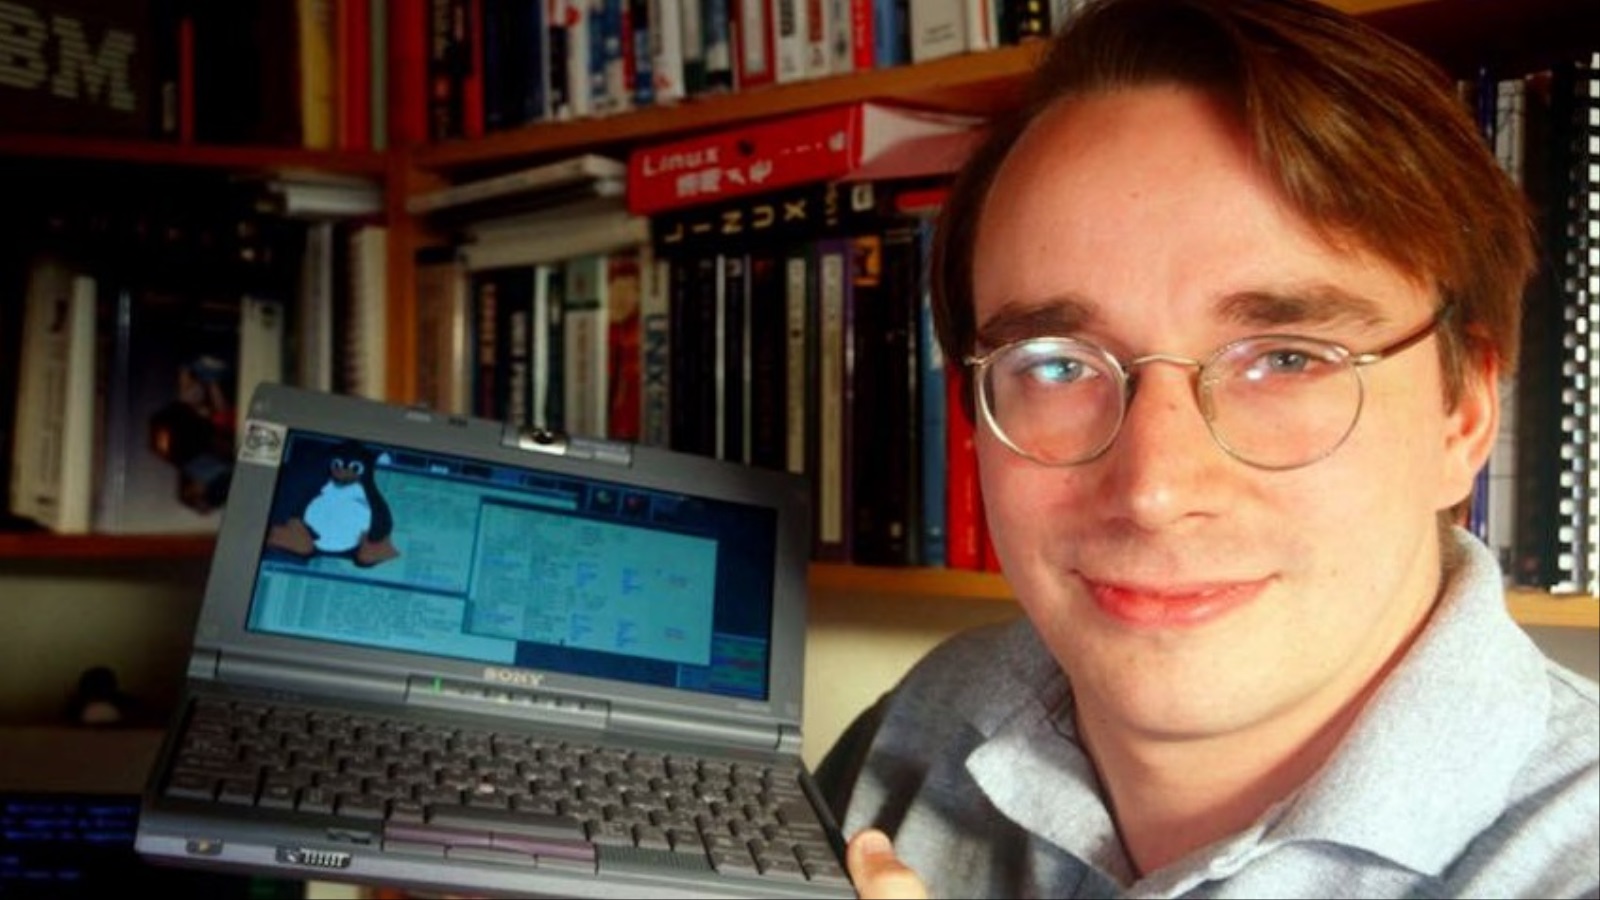 في عام 1991 كان لينوس تورفالدس في سنته الجامعية الثانية فقط عندما بدأ تطوير أحد أهم أنظمة التشغيل المفتوحة المصدر في العالم (مواقع التواصل)